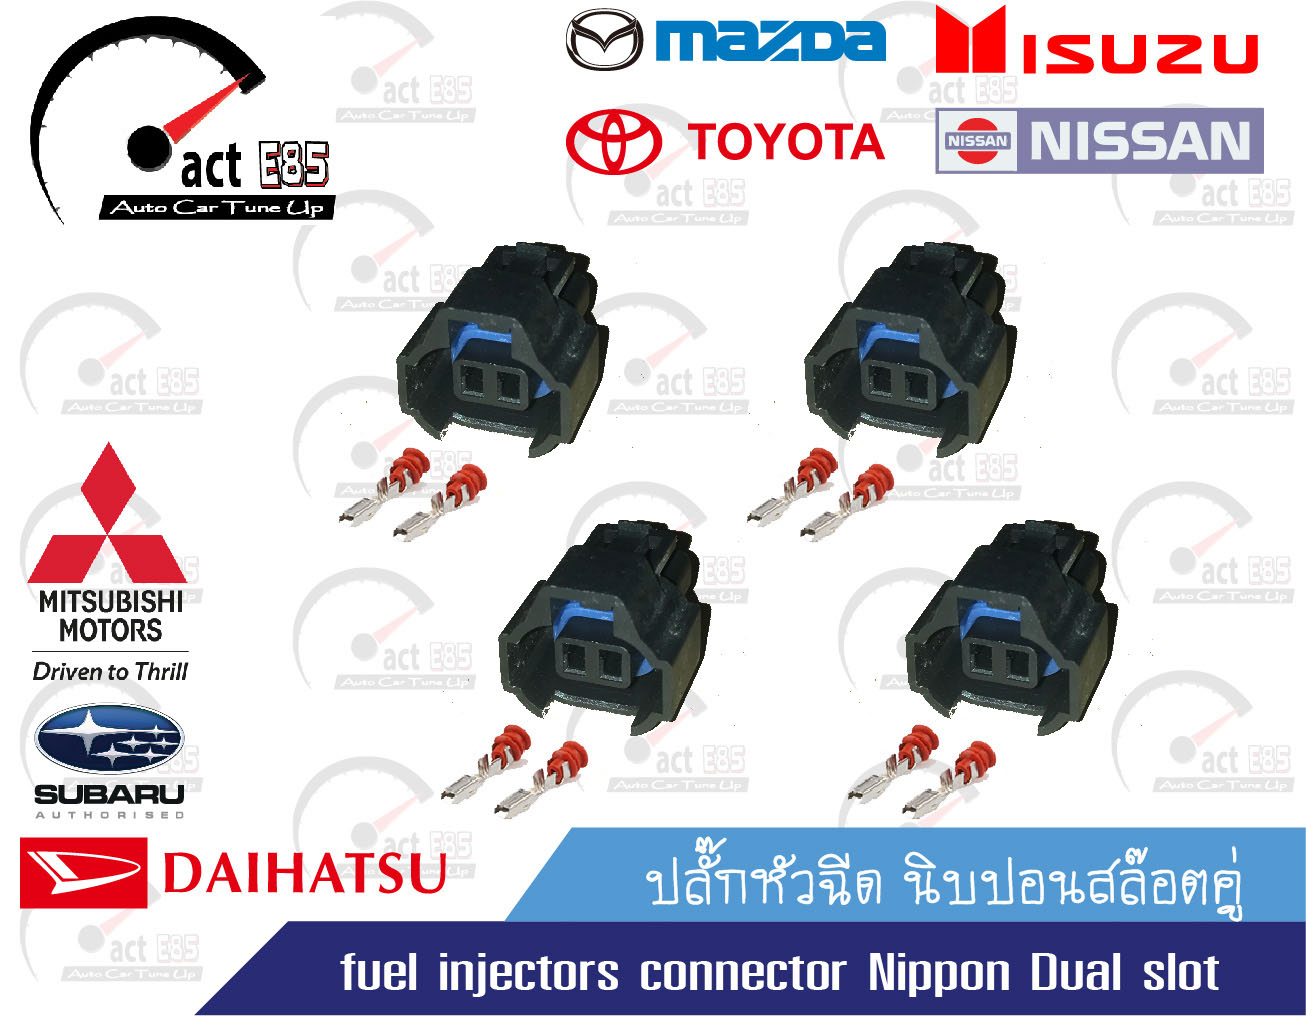 ปลั๊กหัวฉีด นิบปอนสล๊อตคู่ (fuel injectors connector Nippon Dual slot) ชุด 4ตัว